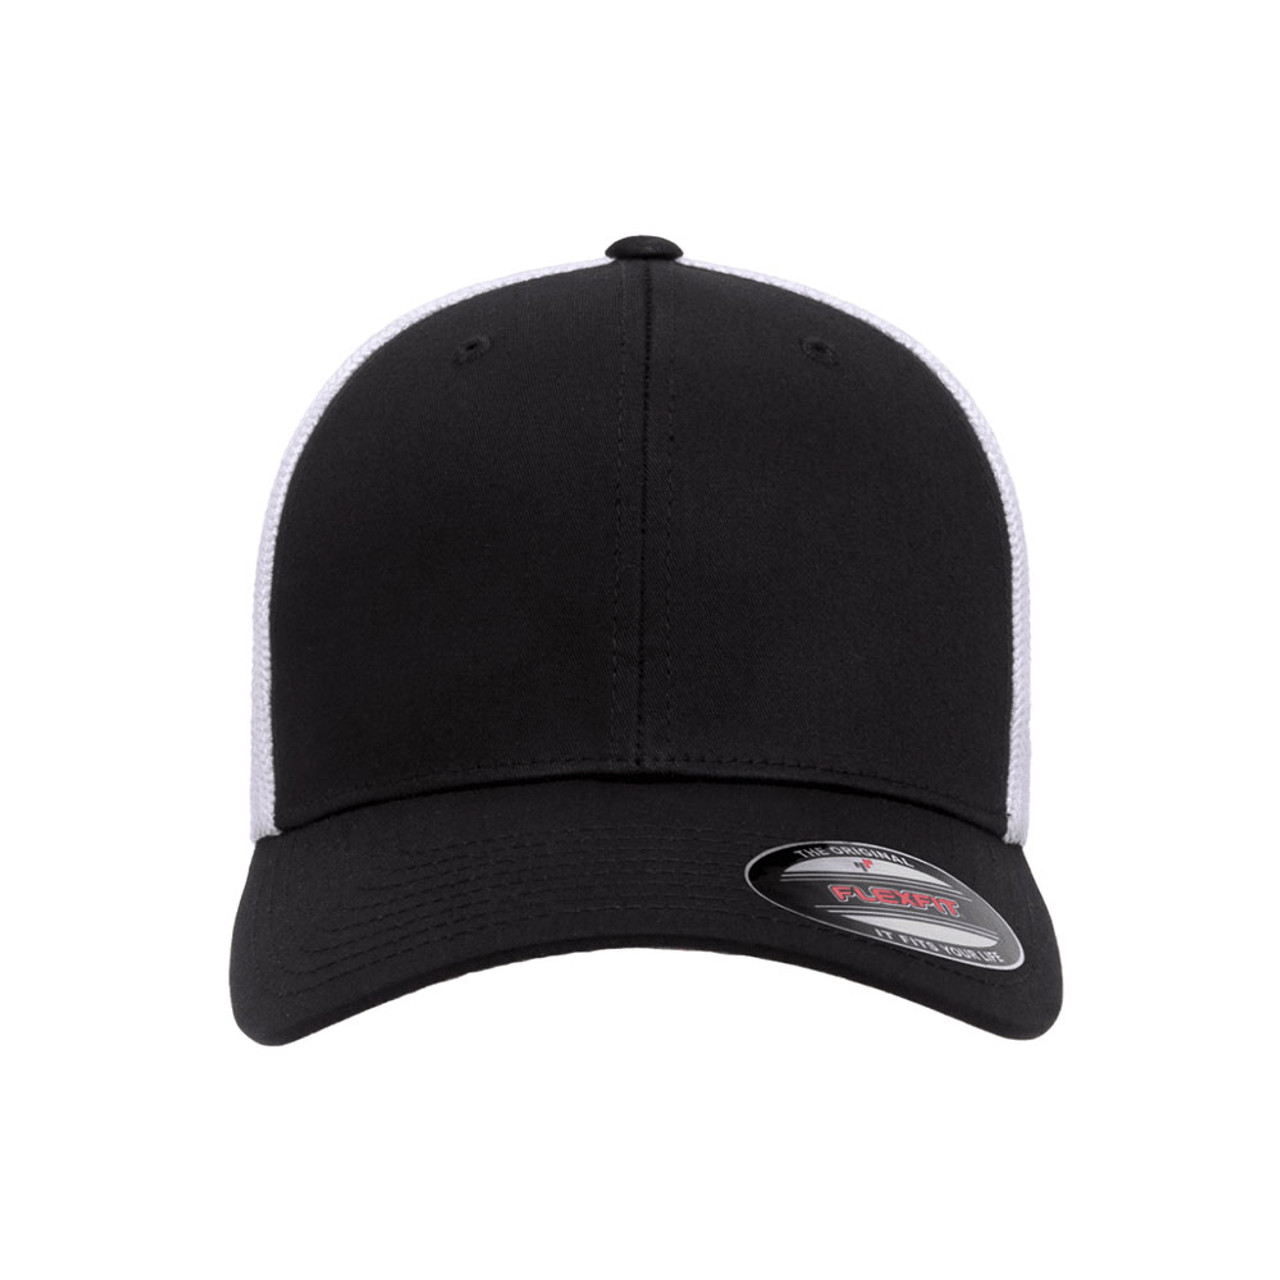 Flexfit Trucker Mesh Cap - 2-Tone - One Dozen | The Jac Hat